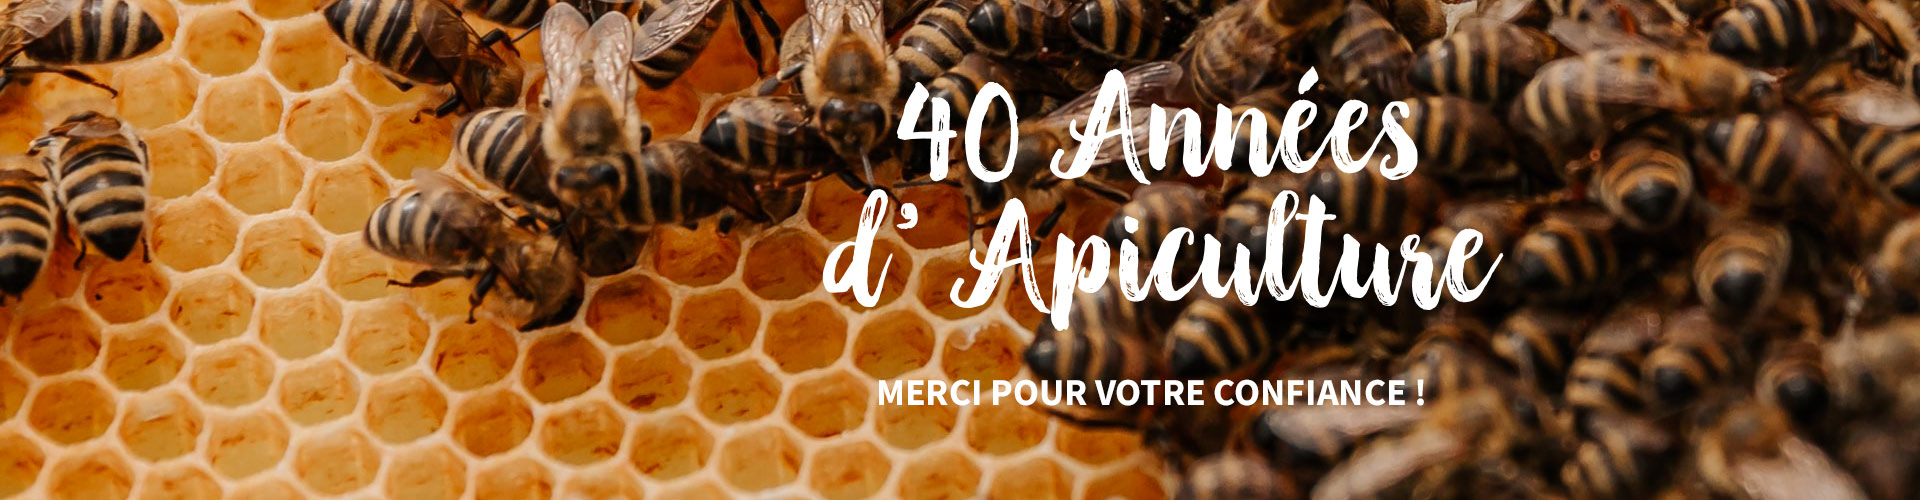 Le Ruchesco : 40 ans d'apiculture